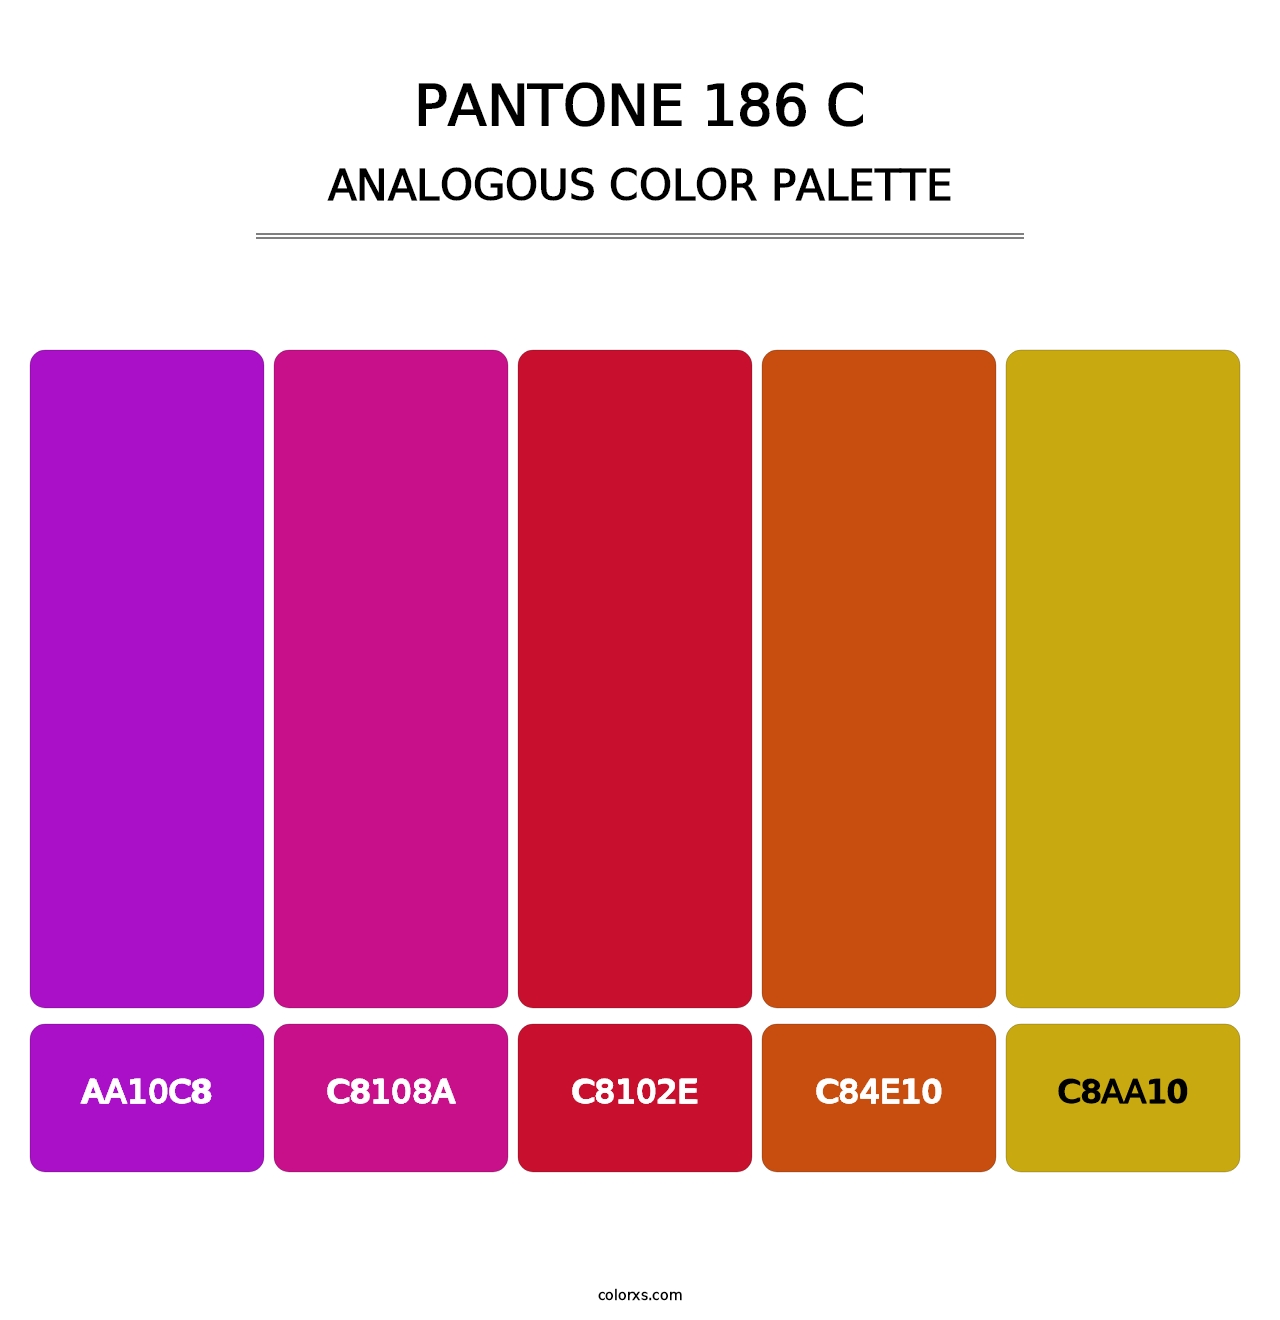 PANTONE 186 C - Analogous Color Palette